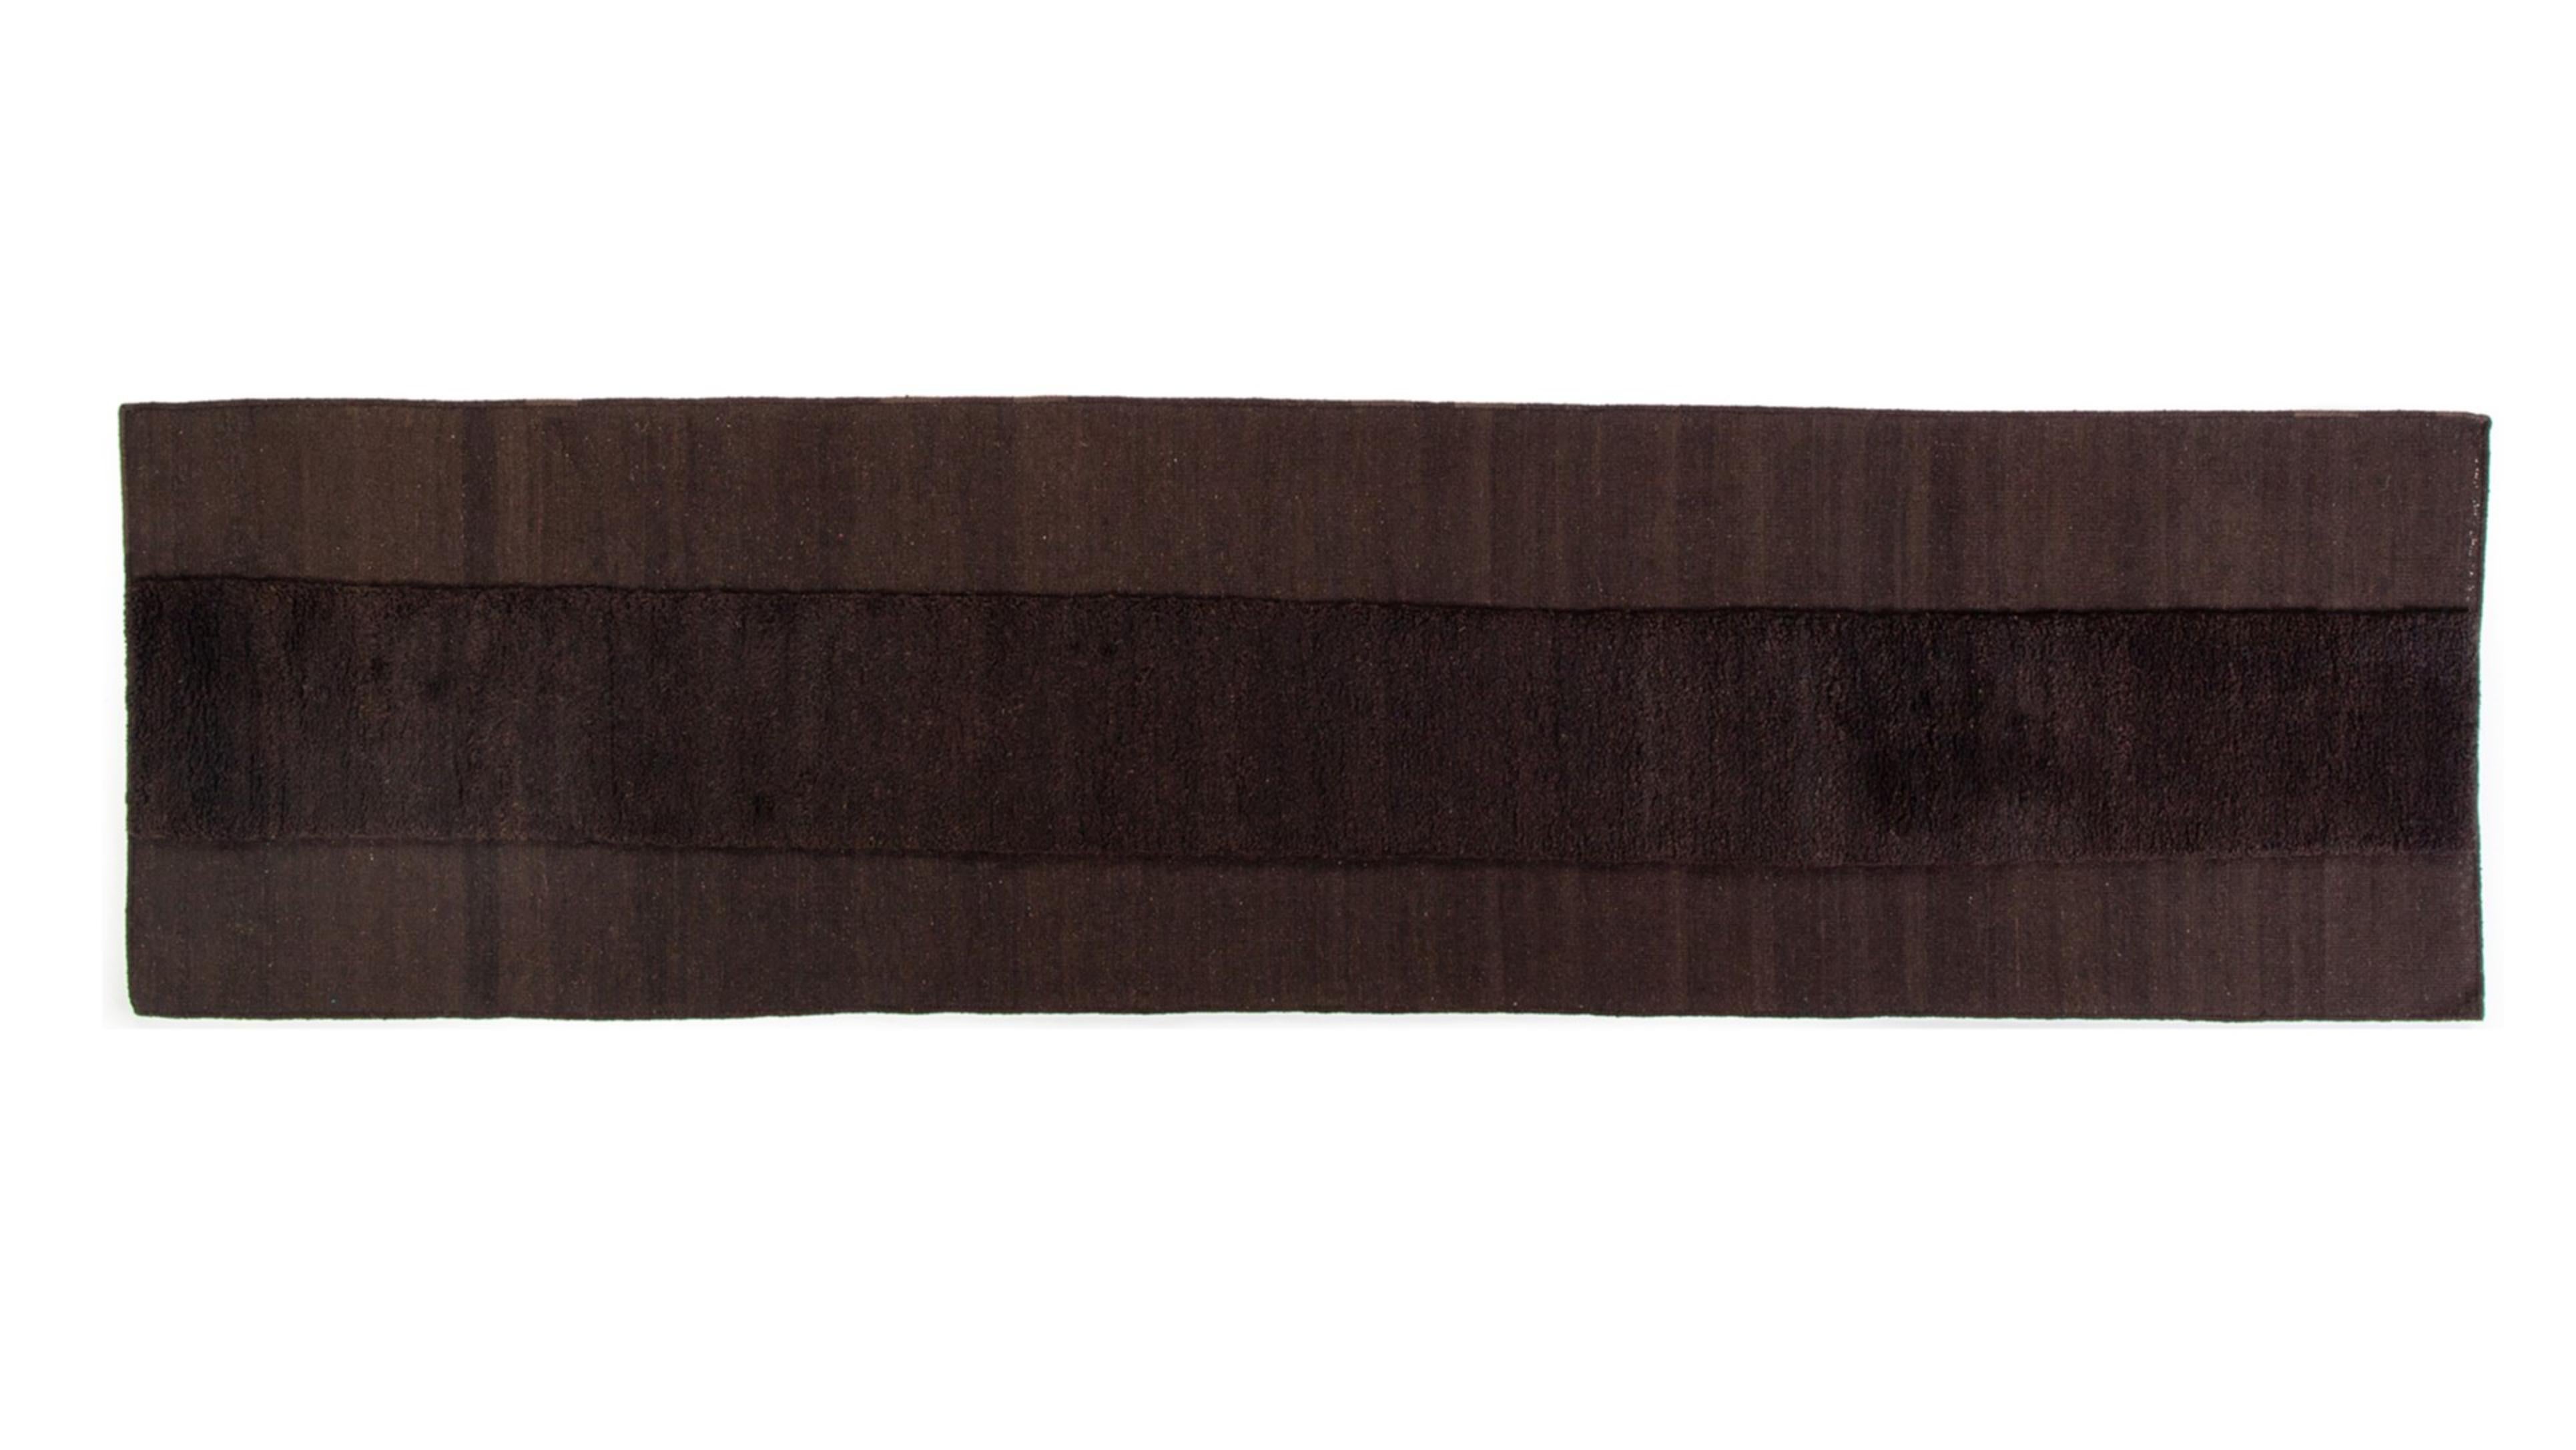 Gabbeh & Kelim-Teppich von Taher Asad Bakhtiari
Abmessungen: B 105 x L 398 cm
MATERIALIEN: Wolle

Taher Asad-Bakhtiari (B.1982, Teheran) ist ein autodidaktischer Künstler, dessen Praxis sich auf Objekte, Textilien und Erfahrungen konzentriert, aber